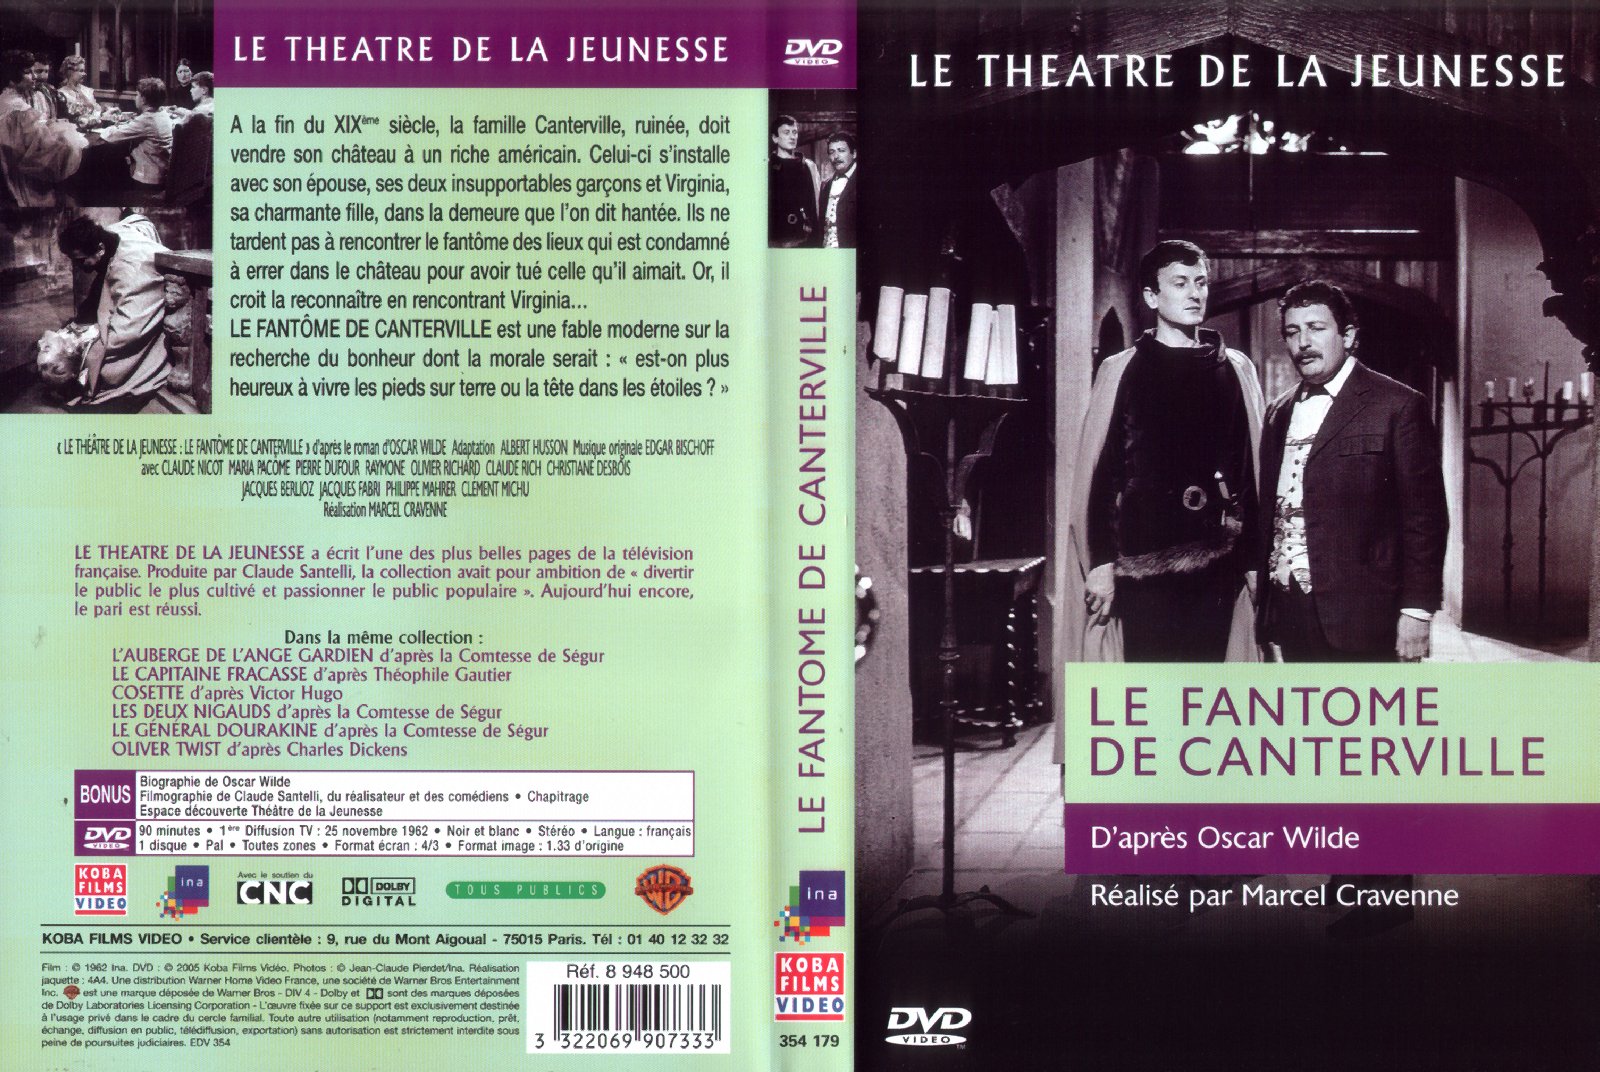 Jaquette DVD Le fantme de canterville